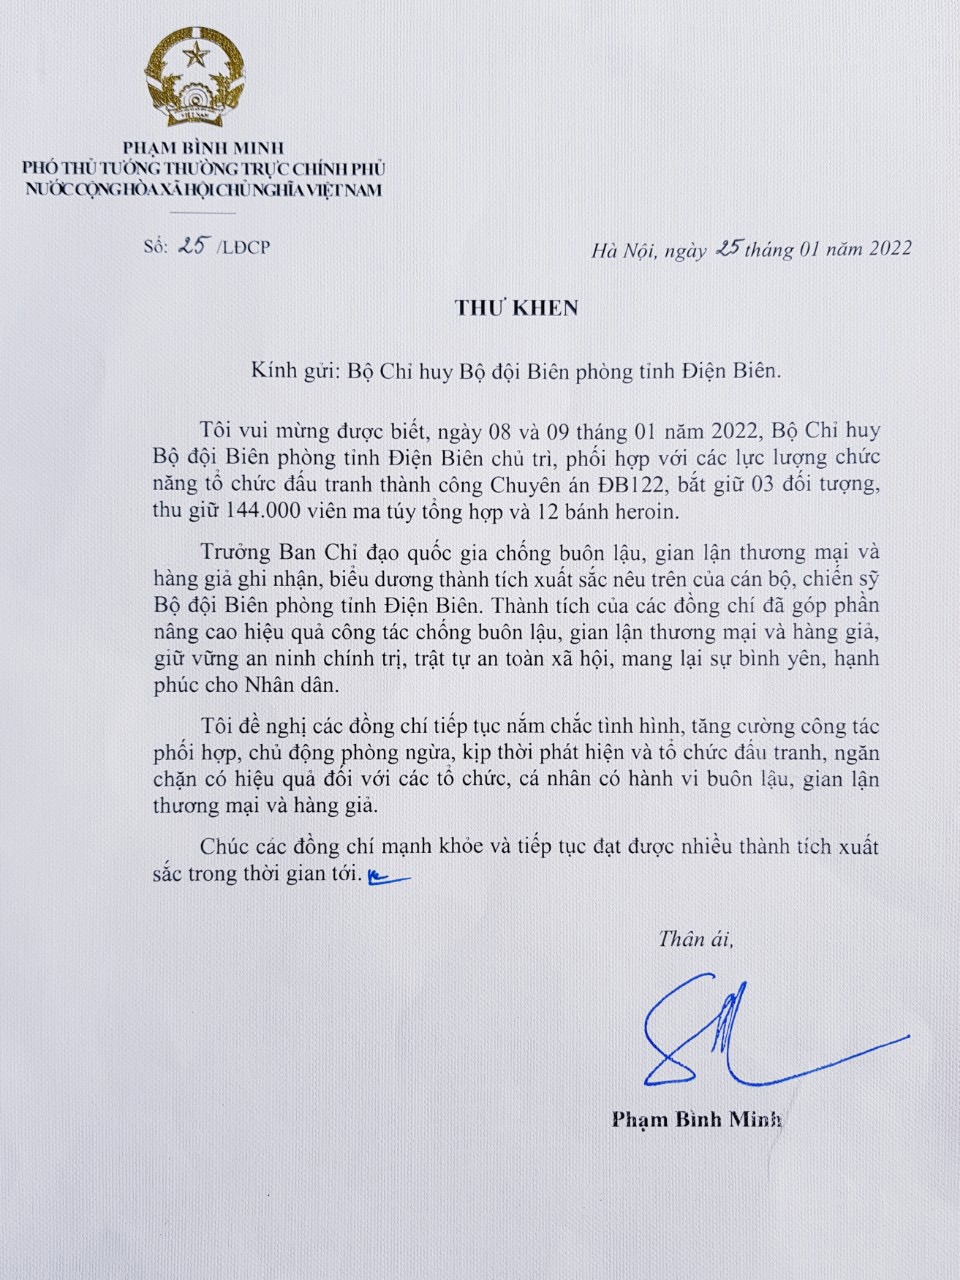 Trưởng Ban Chỉ đạo 389 quốc gia gửi Thư khen Bộ đội Biên phòng tỉnh Điện Biên - Ảnh 1